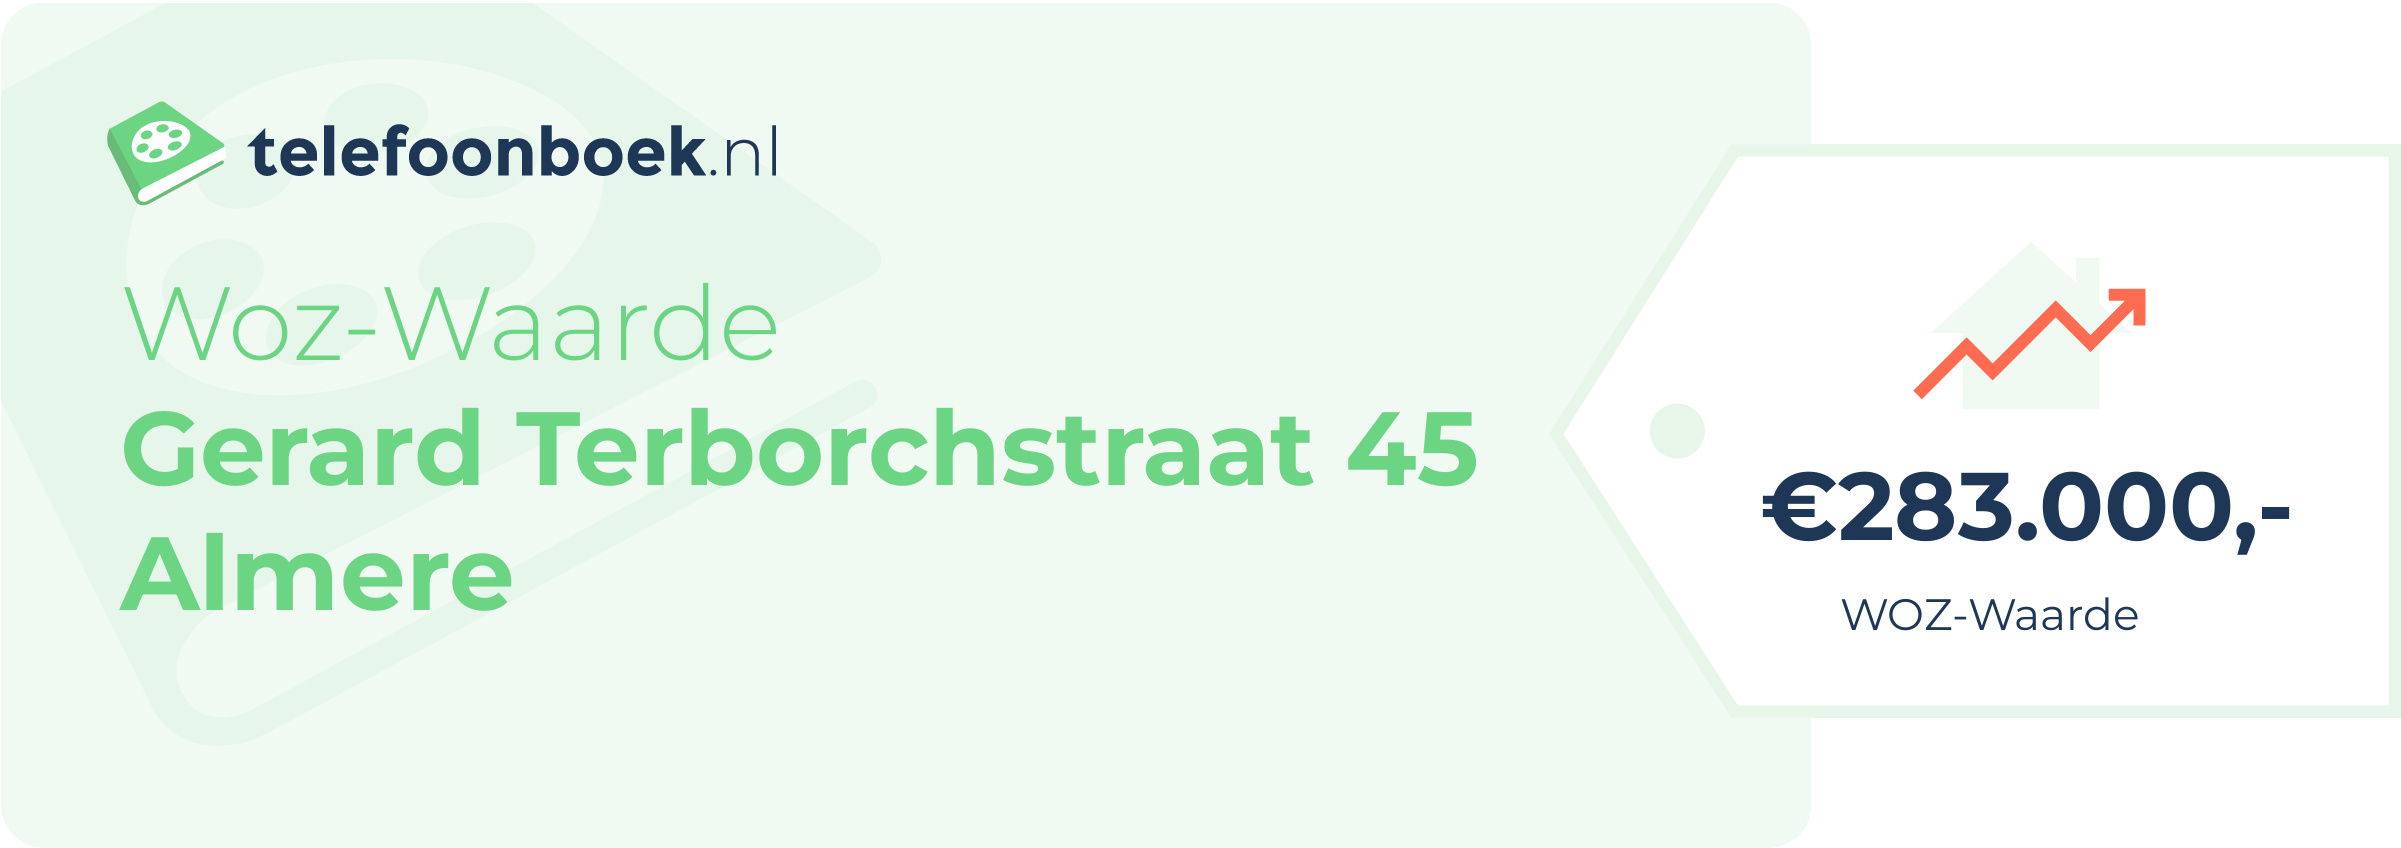 WOZ-waarde Gerard Terborchstraat 45 Almere